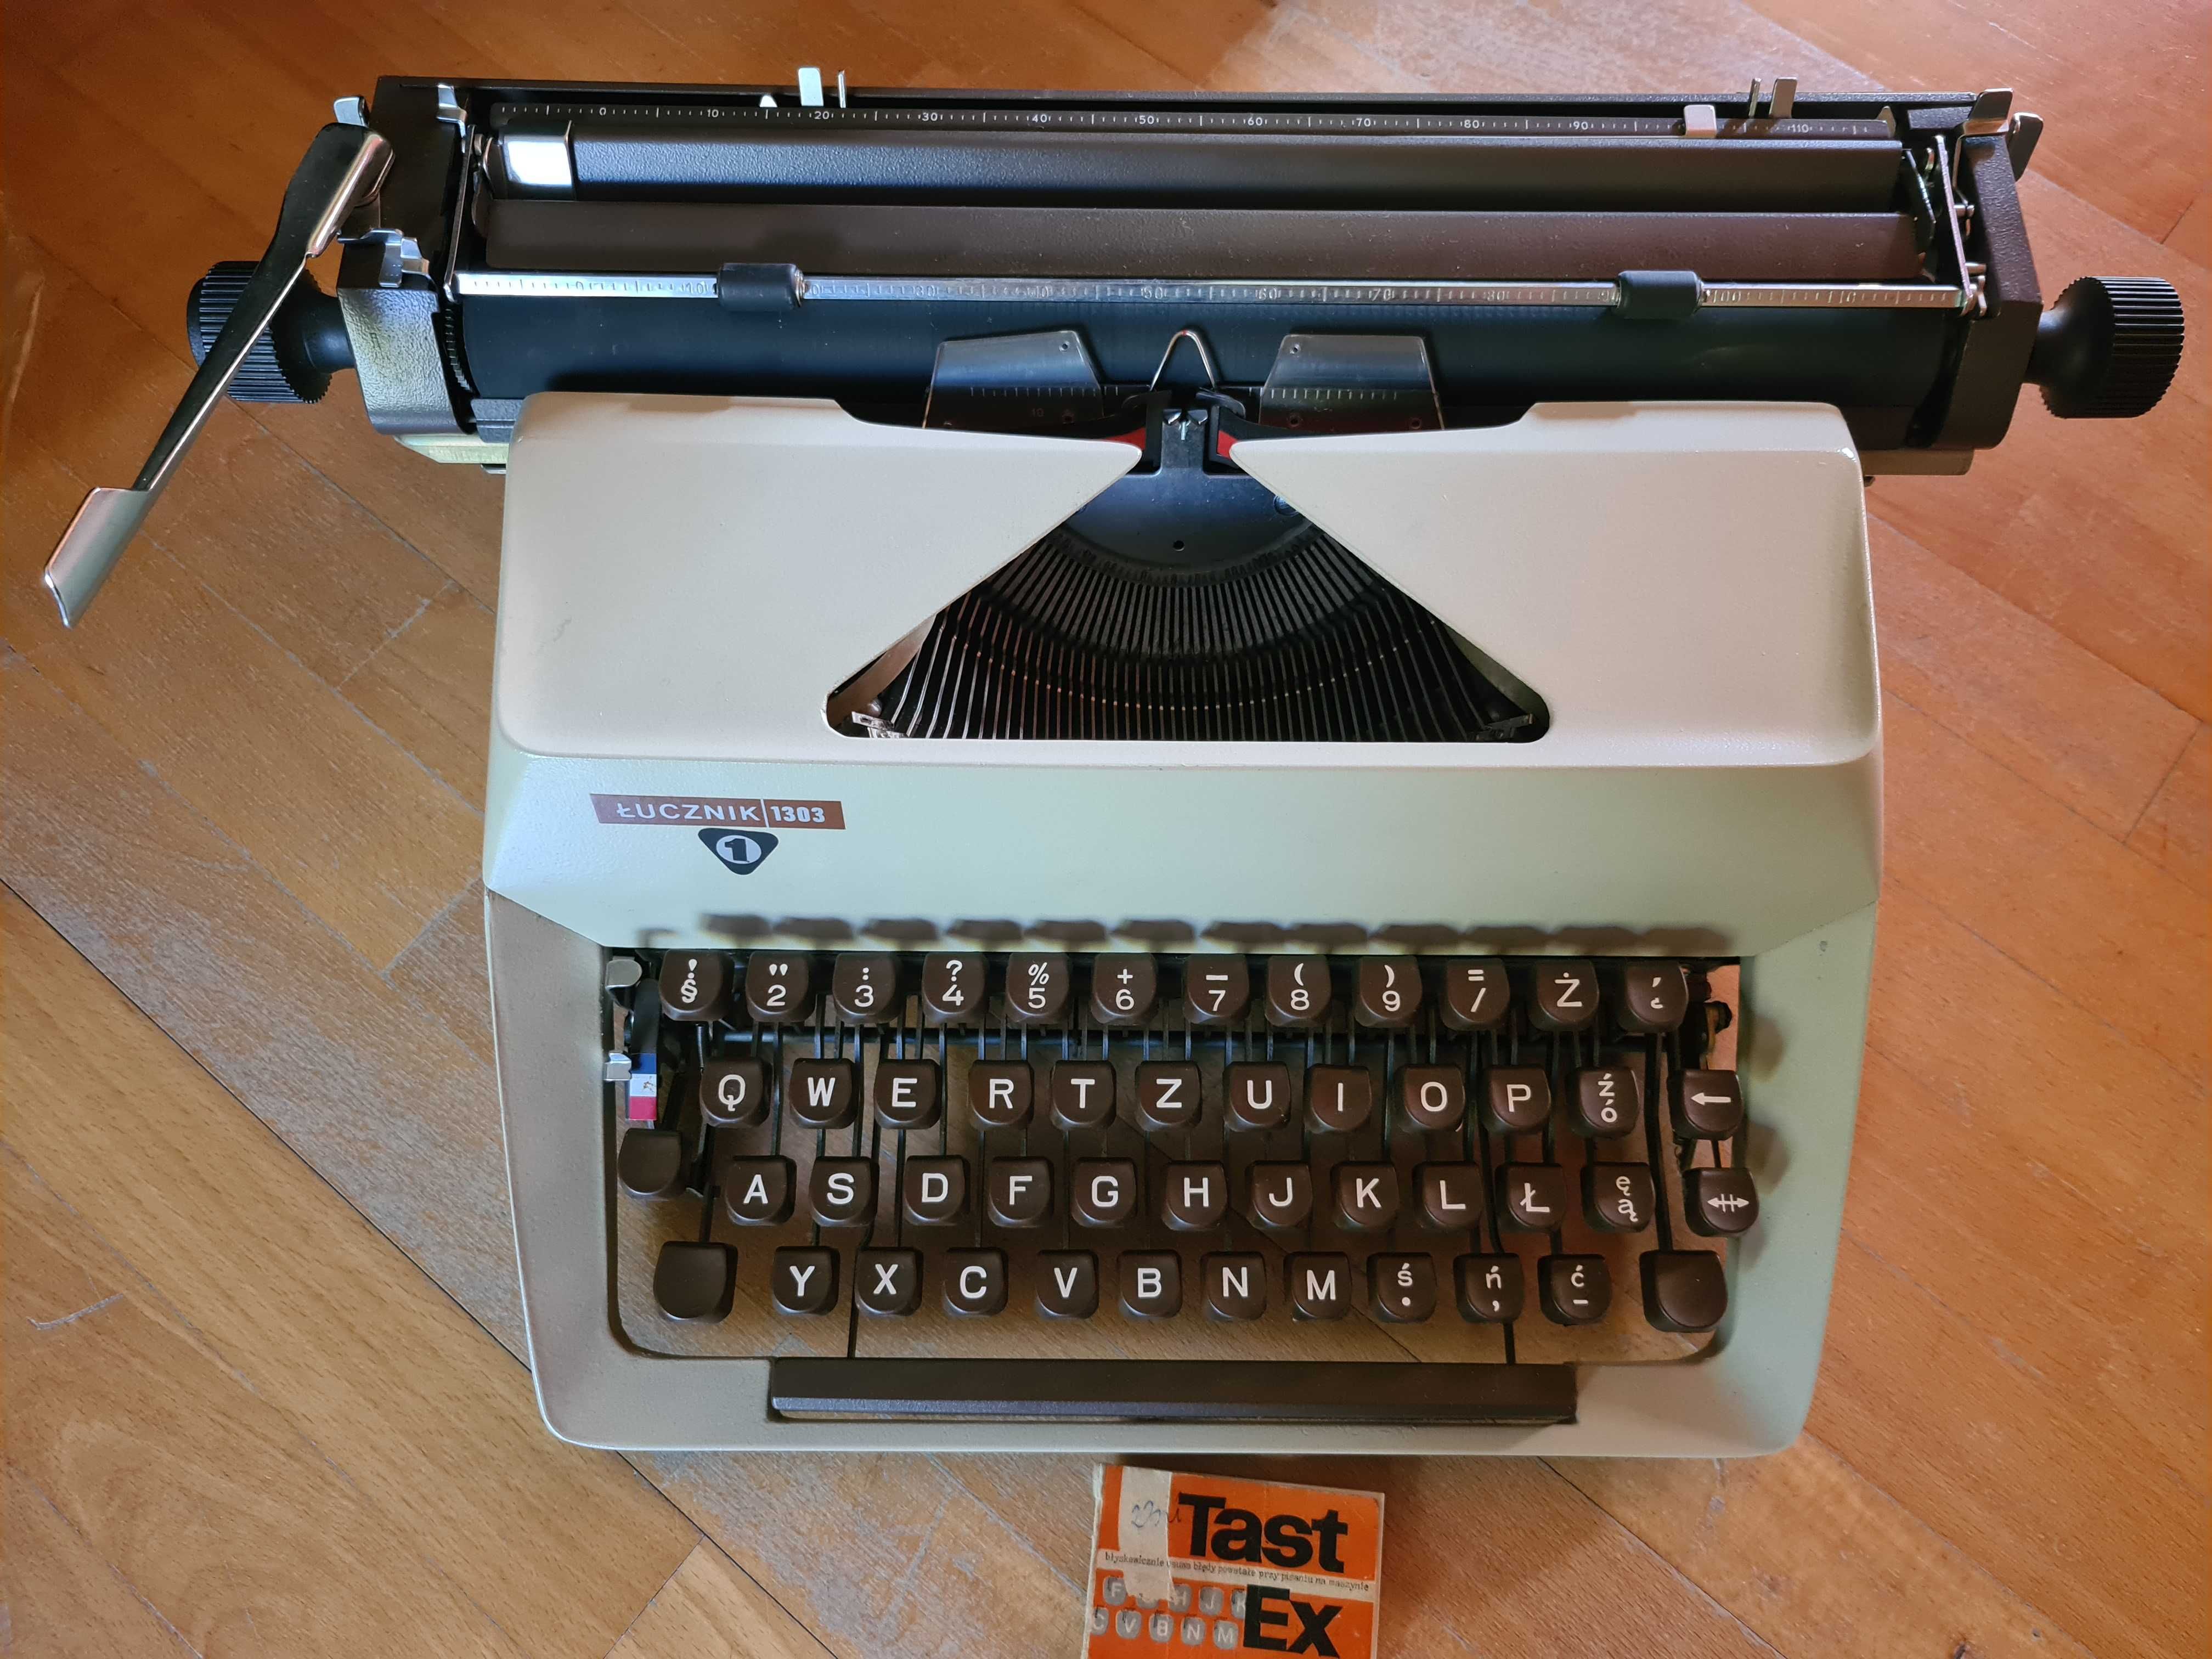 Maszyna do pisania ŁUCZNIK 1303